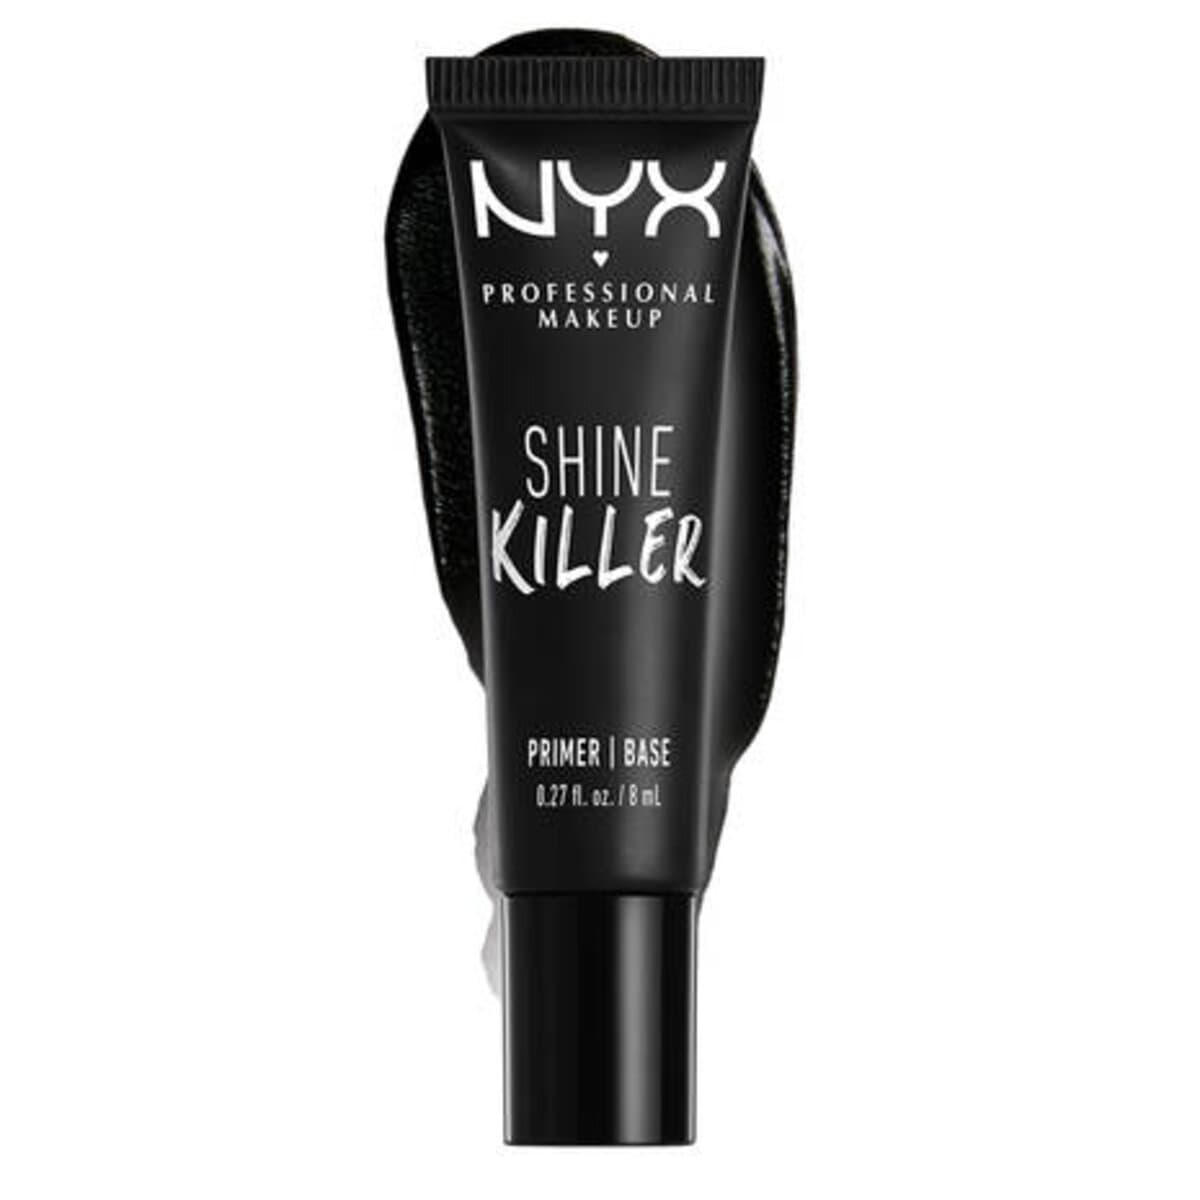 SHINE KILLER PRIMER MINI - NYX PROFESSIONAL MAKEUP